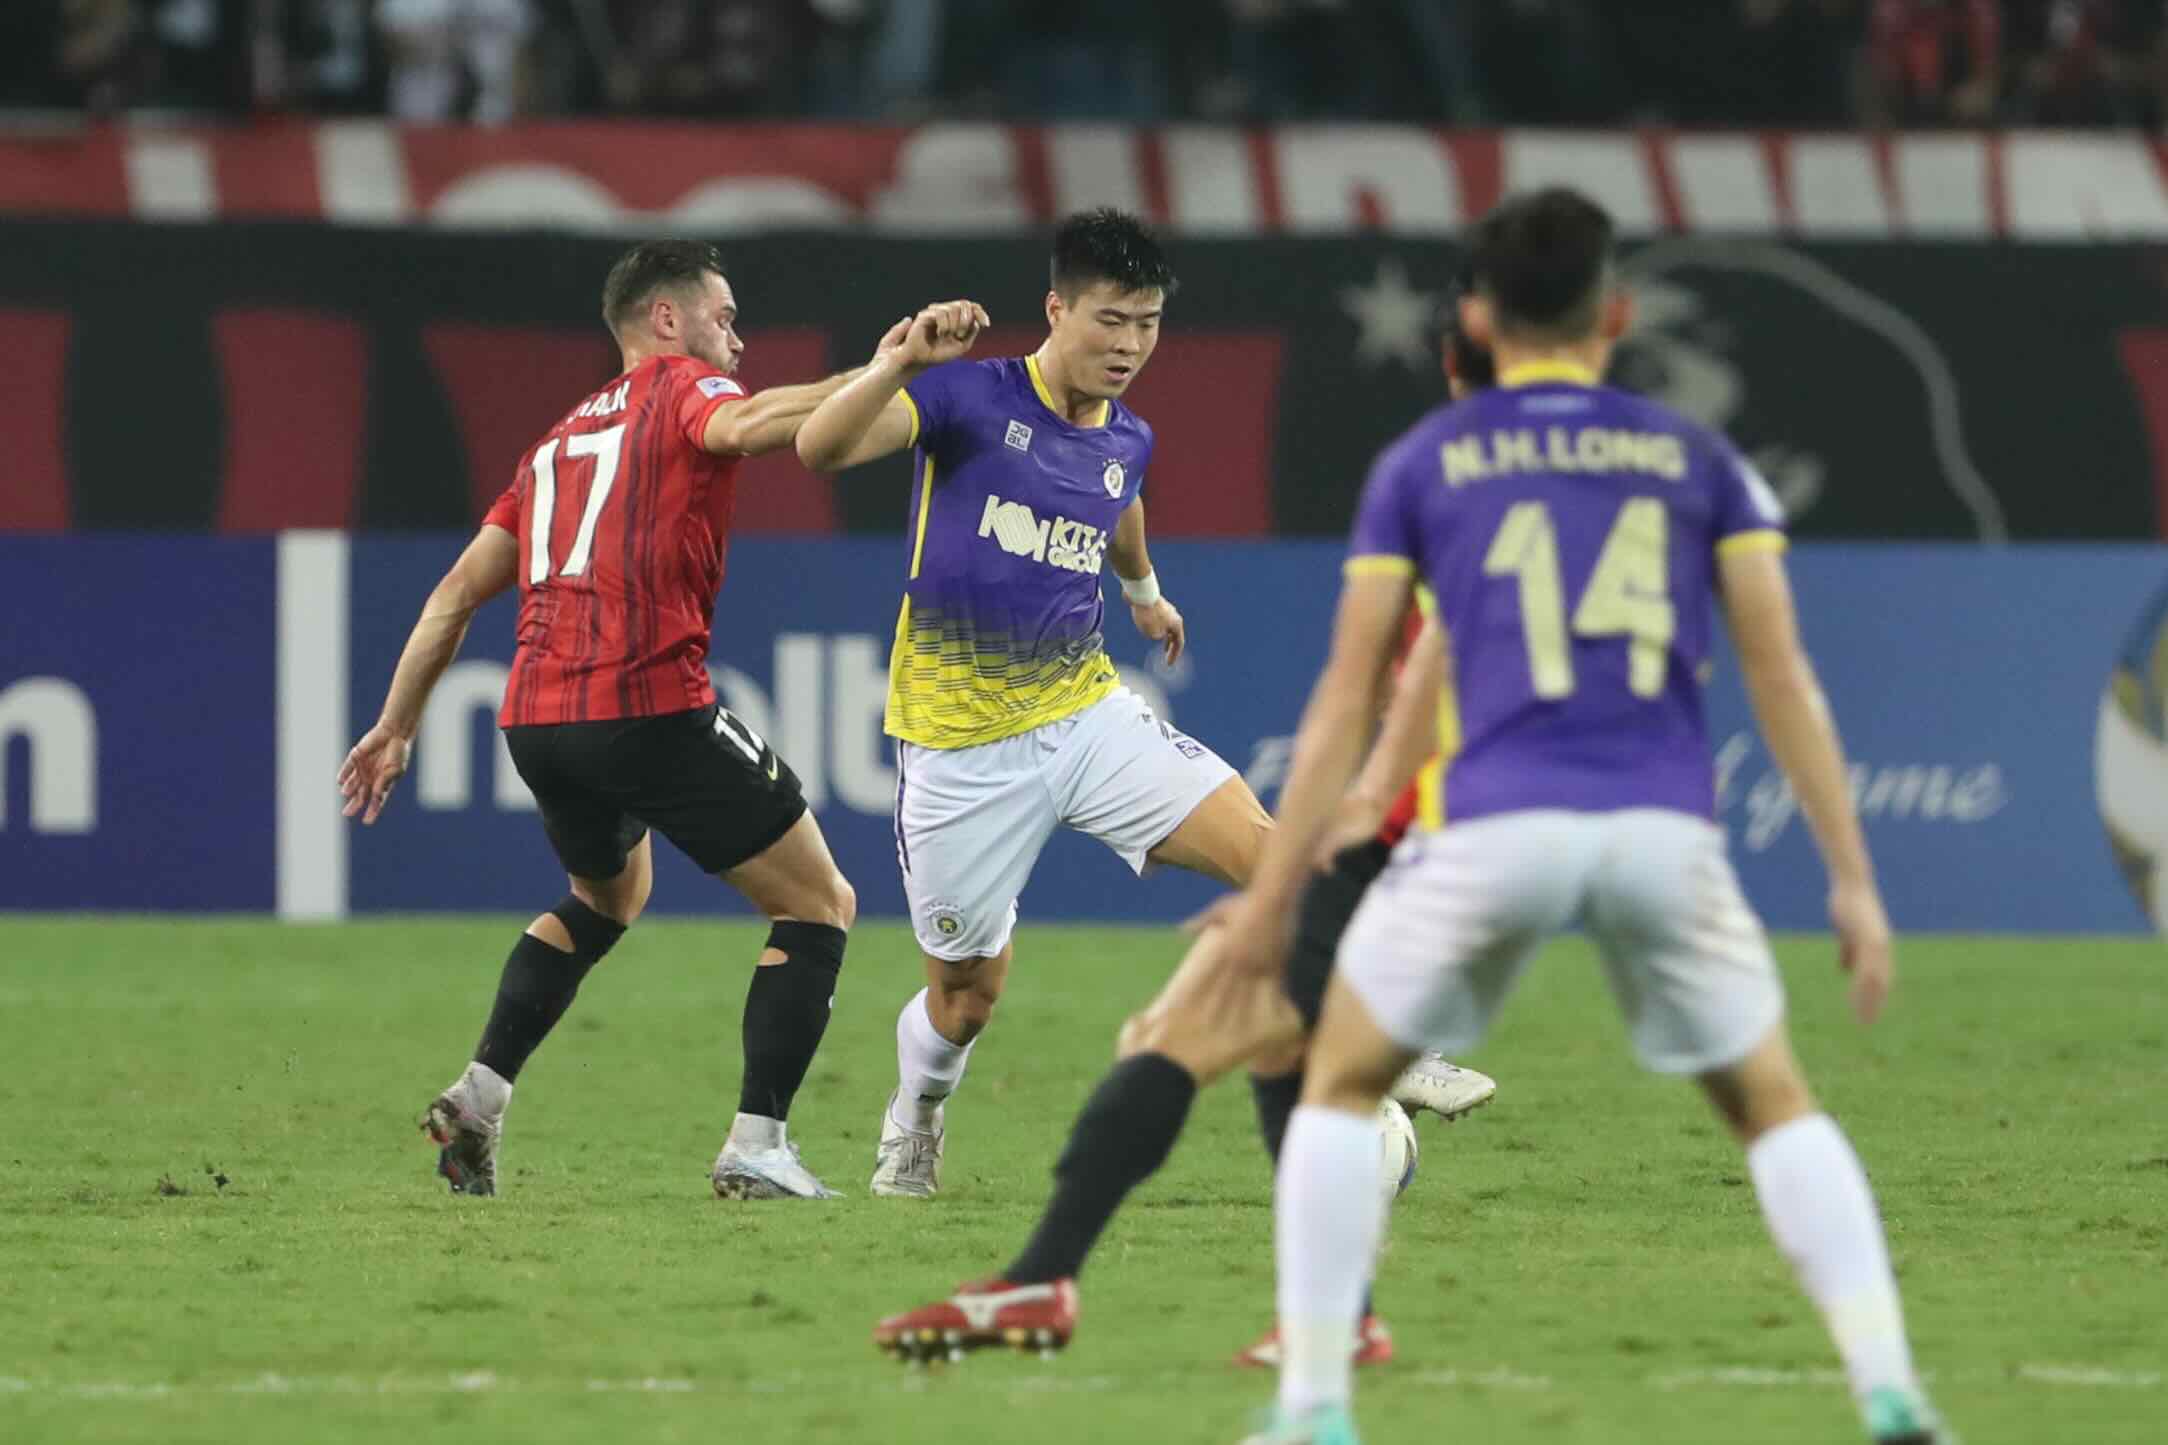 HLV Urawa Red: “Hà Nội FC rất khác so với trận đấu lượt đi, xứng đáng thắng cuộc” - Ảnh 1